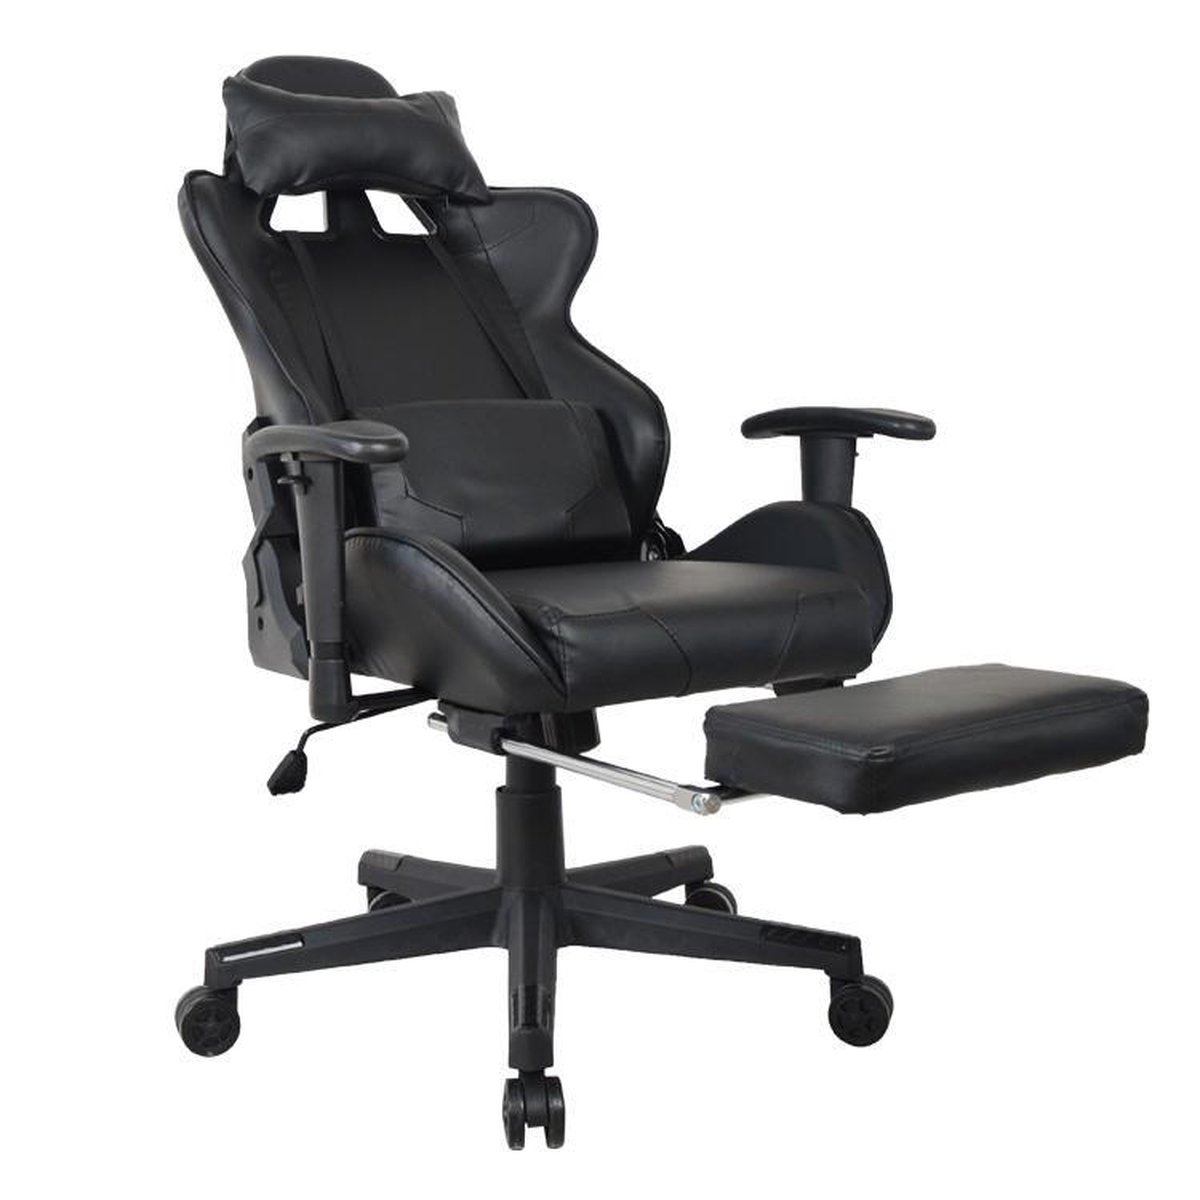 Gamestoel Thomas met voetsteun - bureaustoel racing stijl - verstelbaar - zwart - VDD Gaming